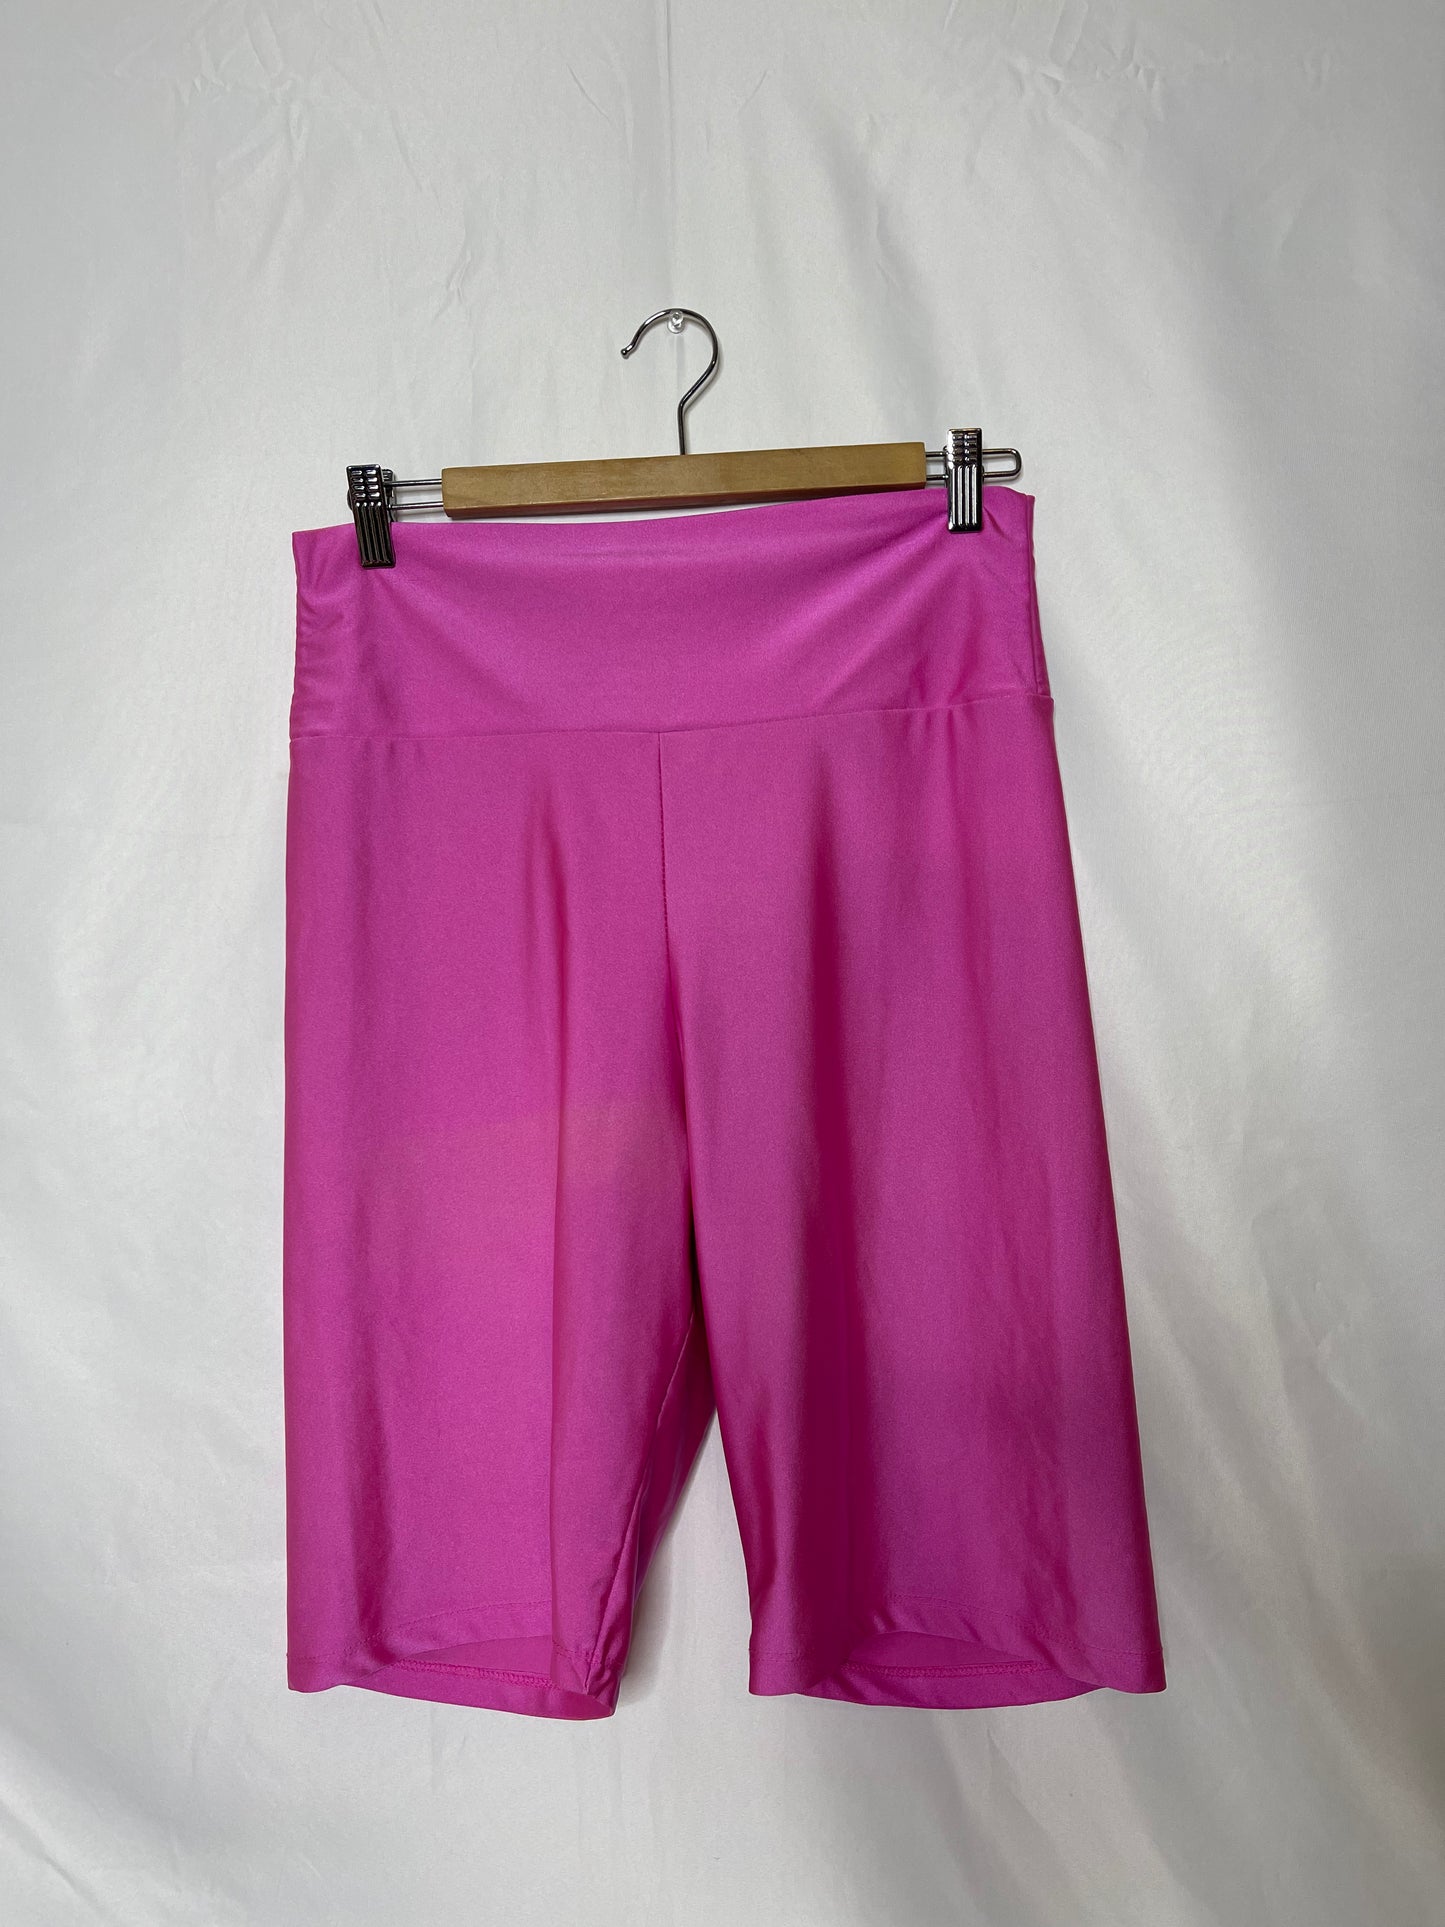 2x Hot pink biker shorts